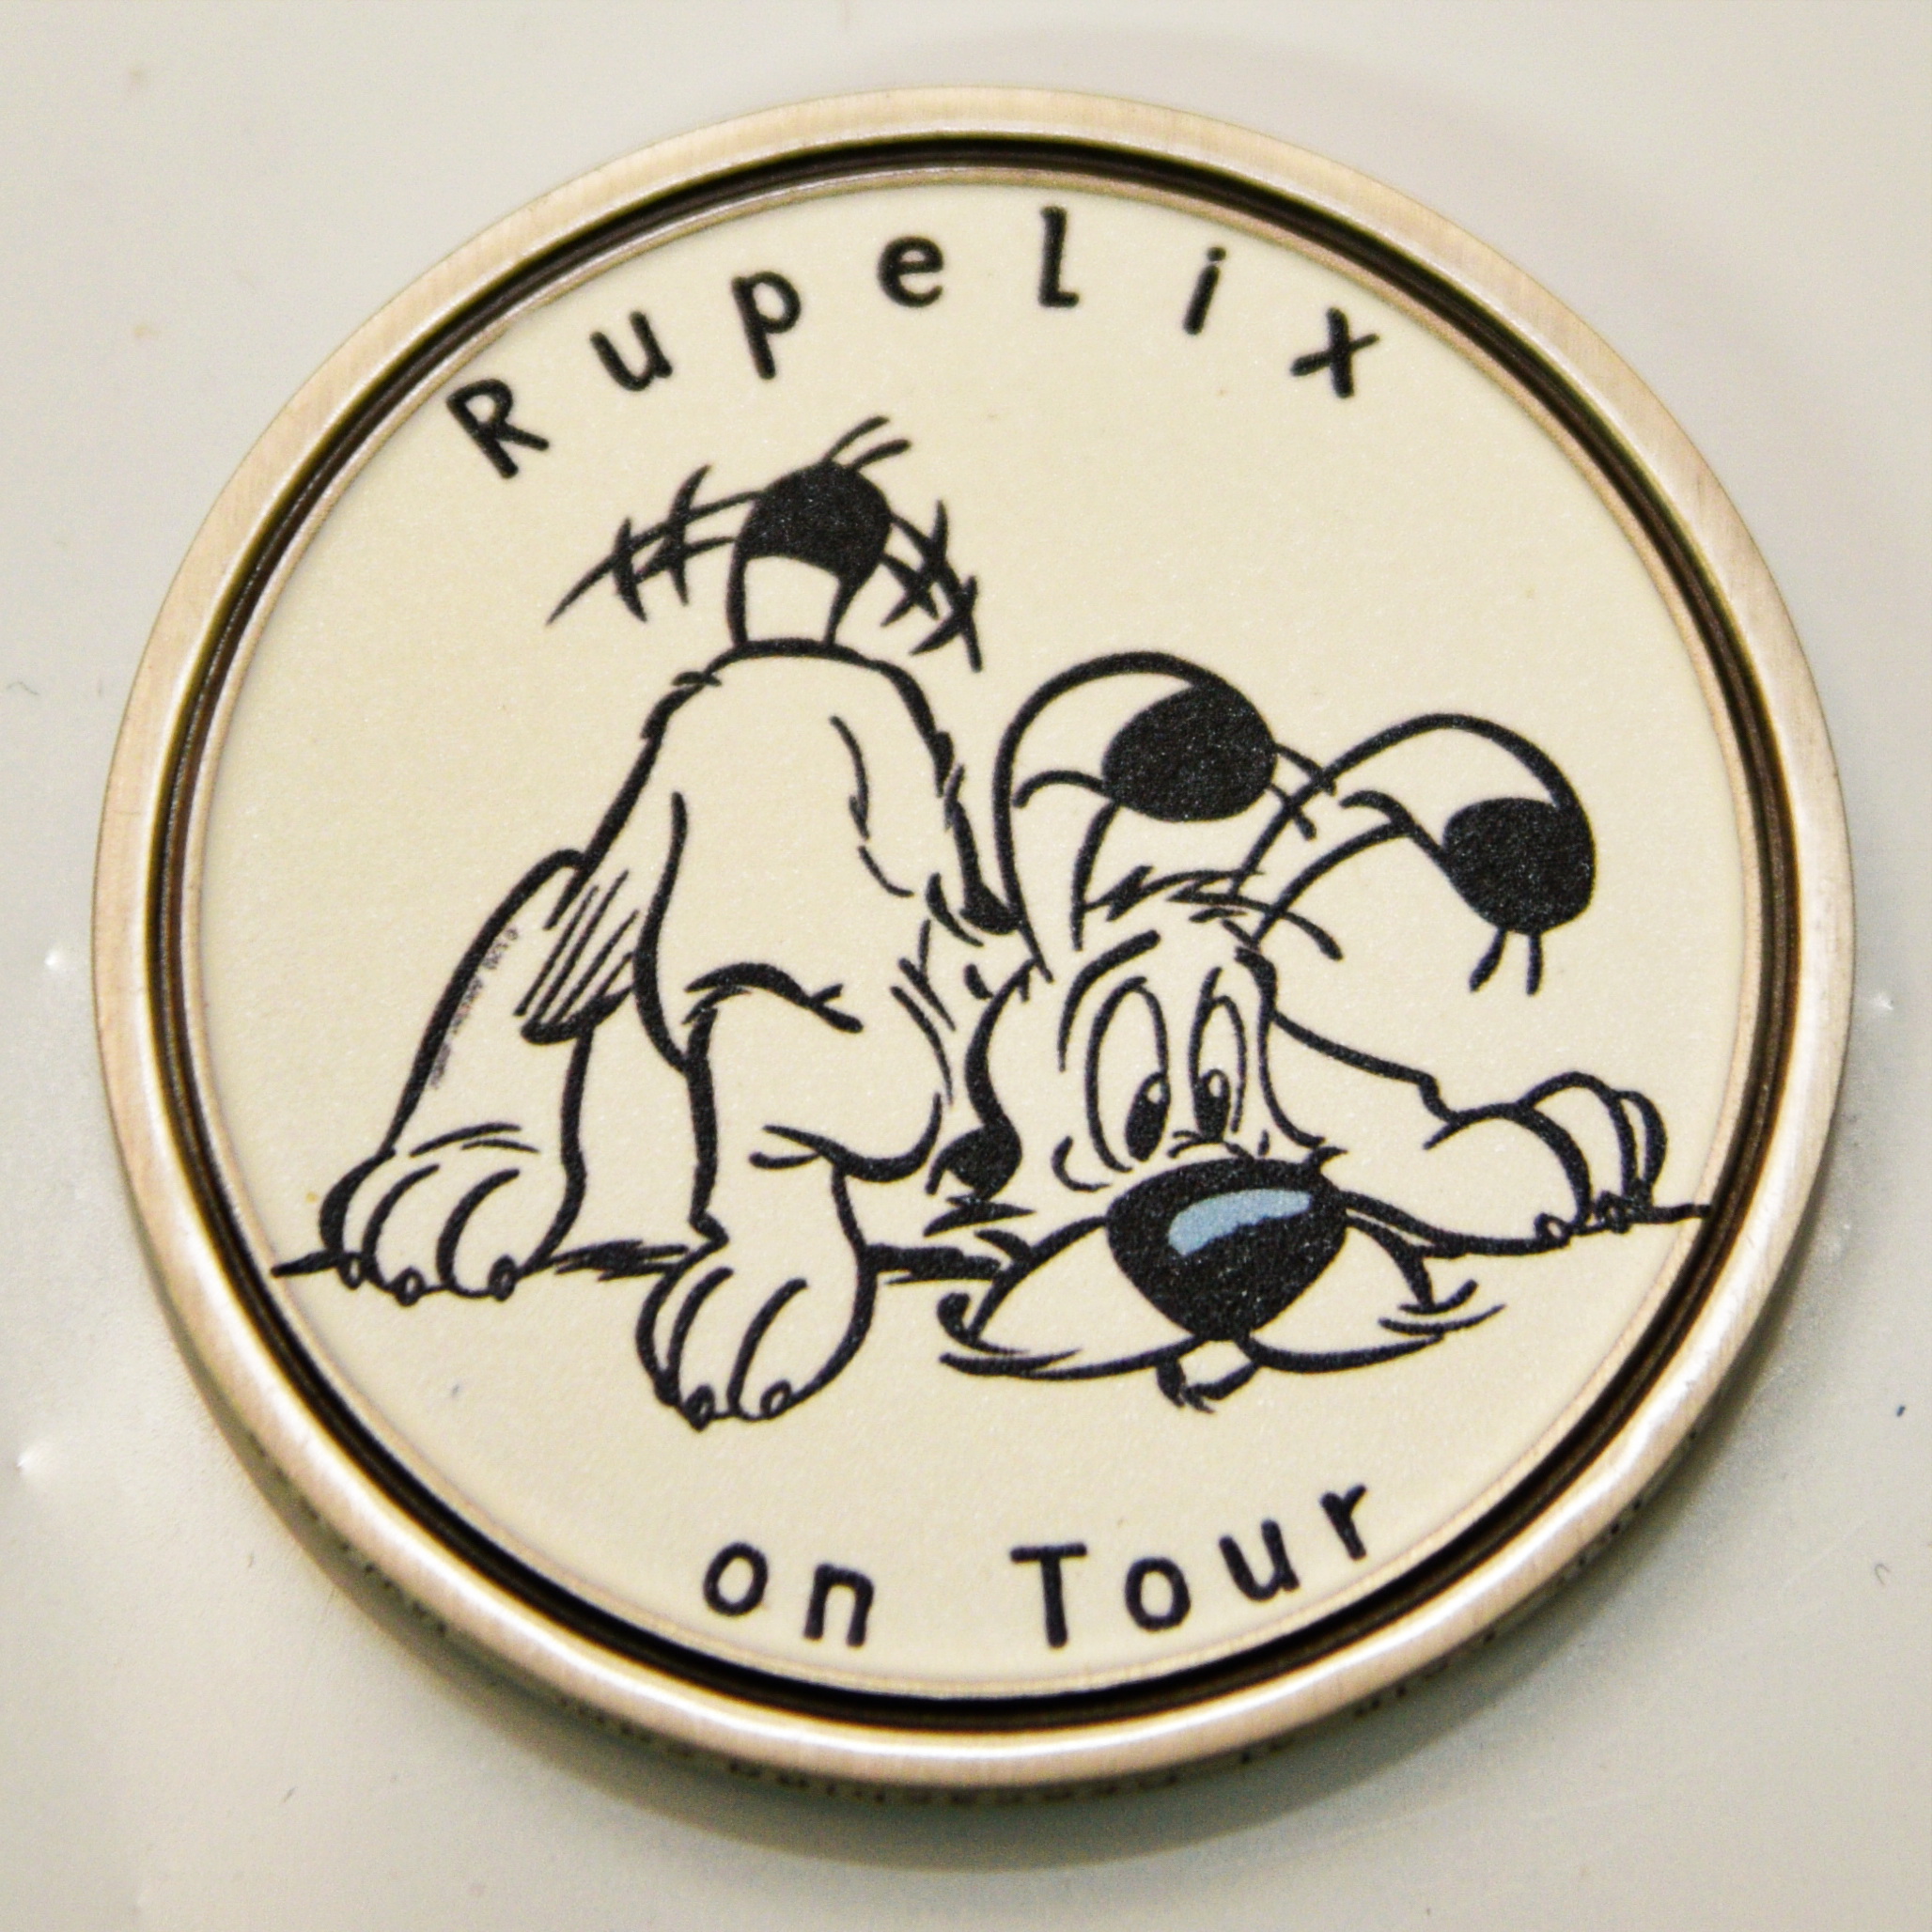 Rupelix on Tour